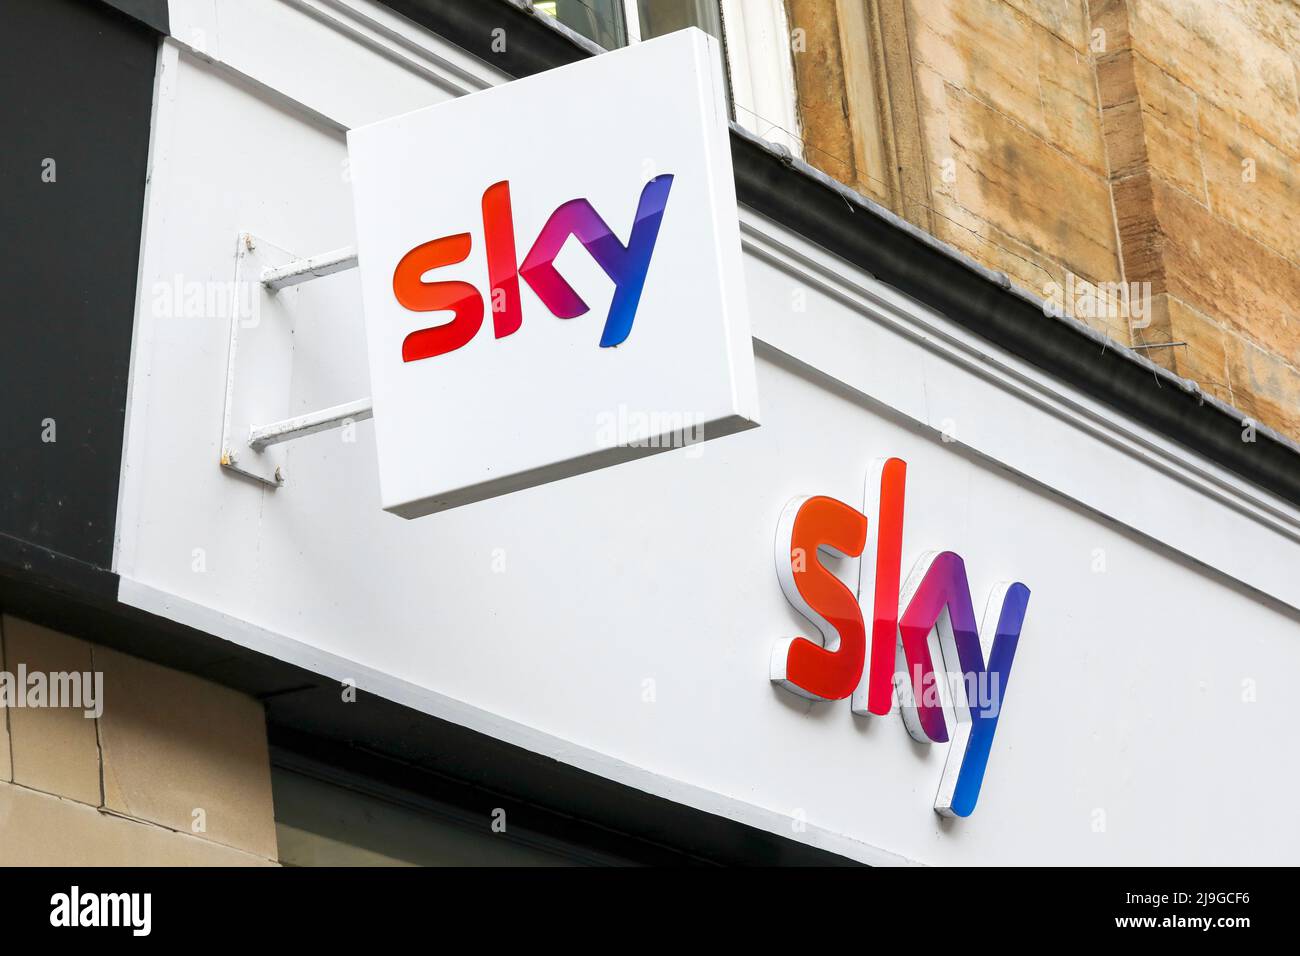 Signe de droit d'auteur enregistré pour la société de technologie SKY au-dessus d'un magasin à Glasgow, en Écosse. Banque D'Images